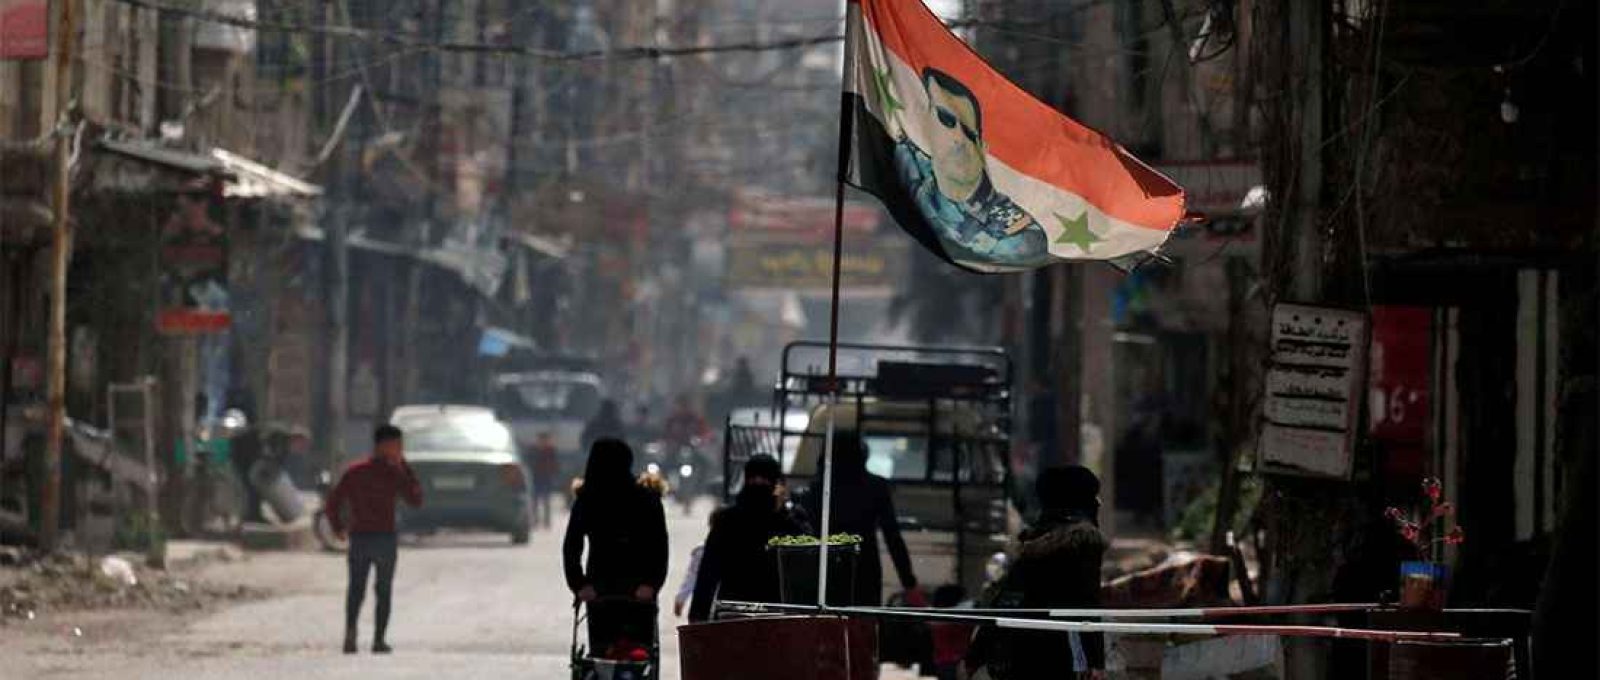 Uma bandeira nacional com a foto do presidente da Síria, Bashar al-Assad, tremula em um posto de controle em Douma, nos subúrbios de Damasco, Síria, em 10 de março de 2021 (Omar Sanadiki/Reuters).